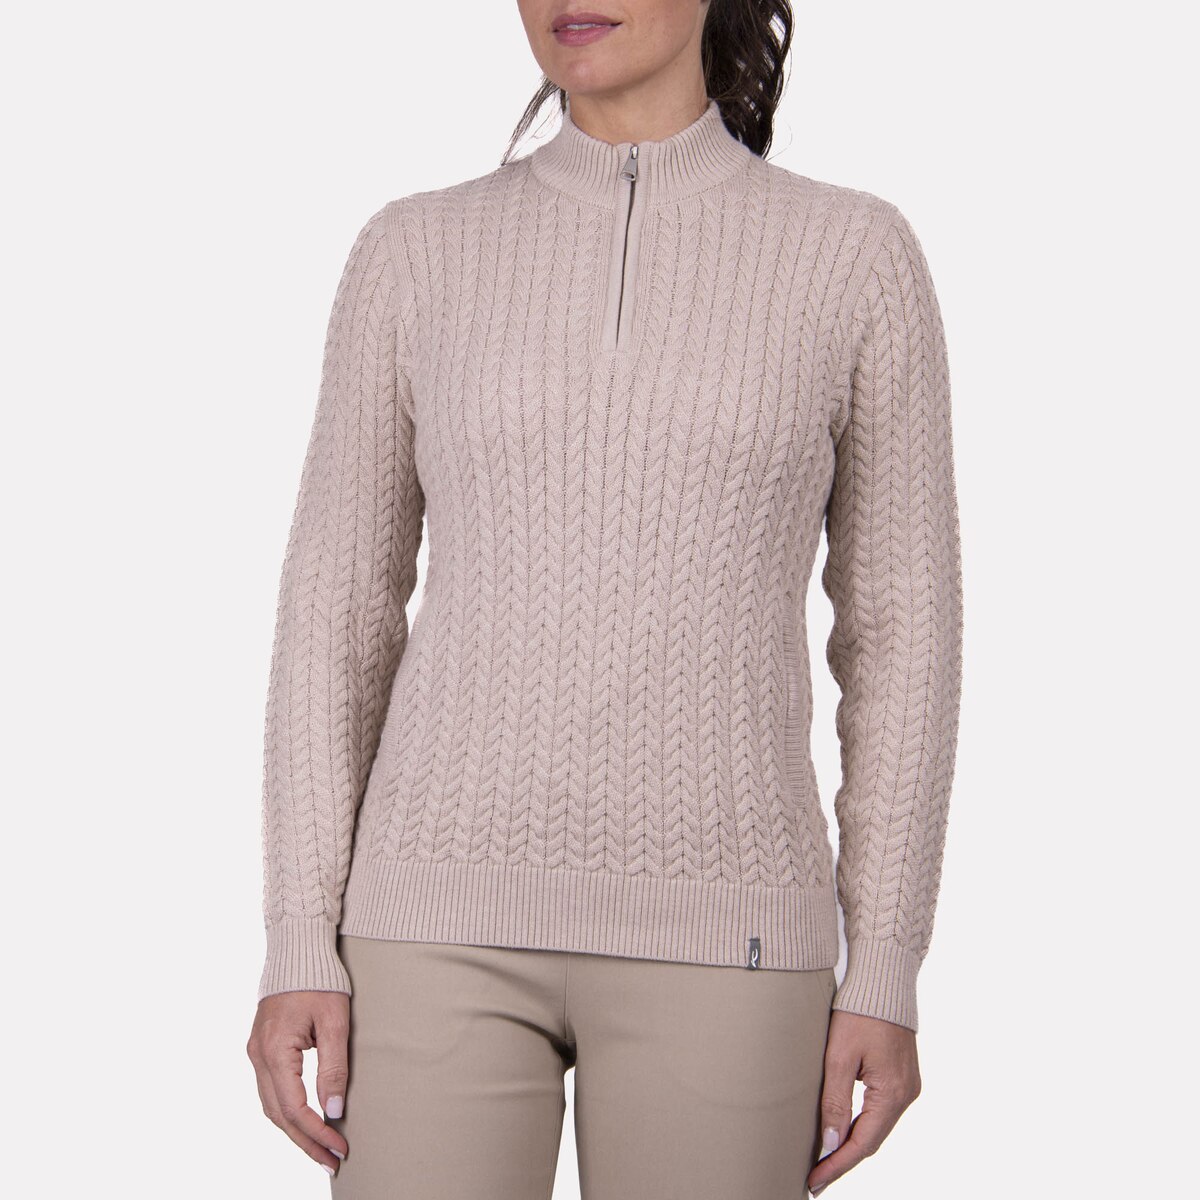 Louis Vuitton - Ribbed Knit Cashmere Jumper - Blanc Lait - Women - Size: XS - Luxury